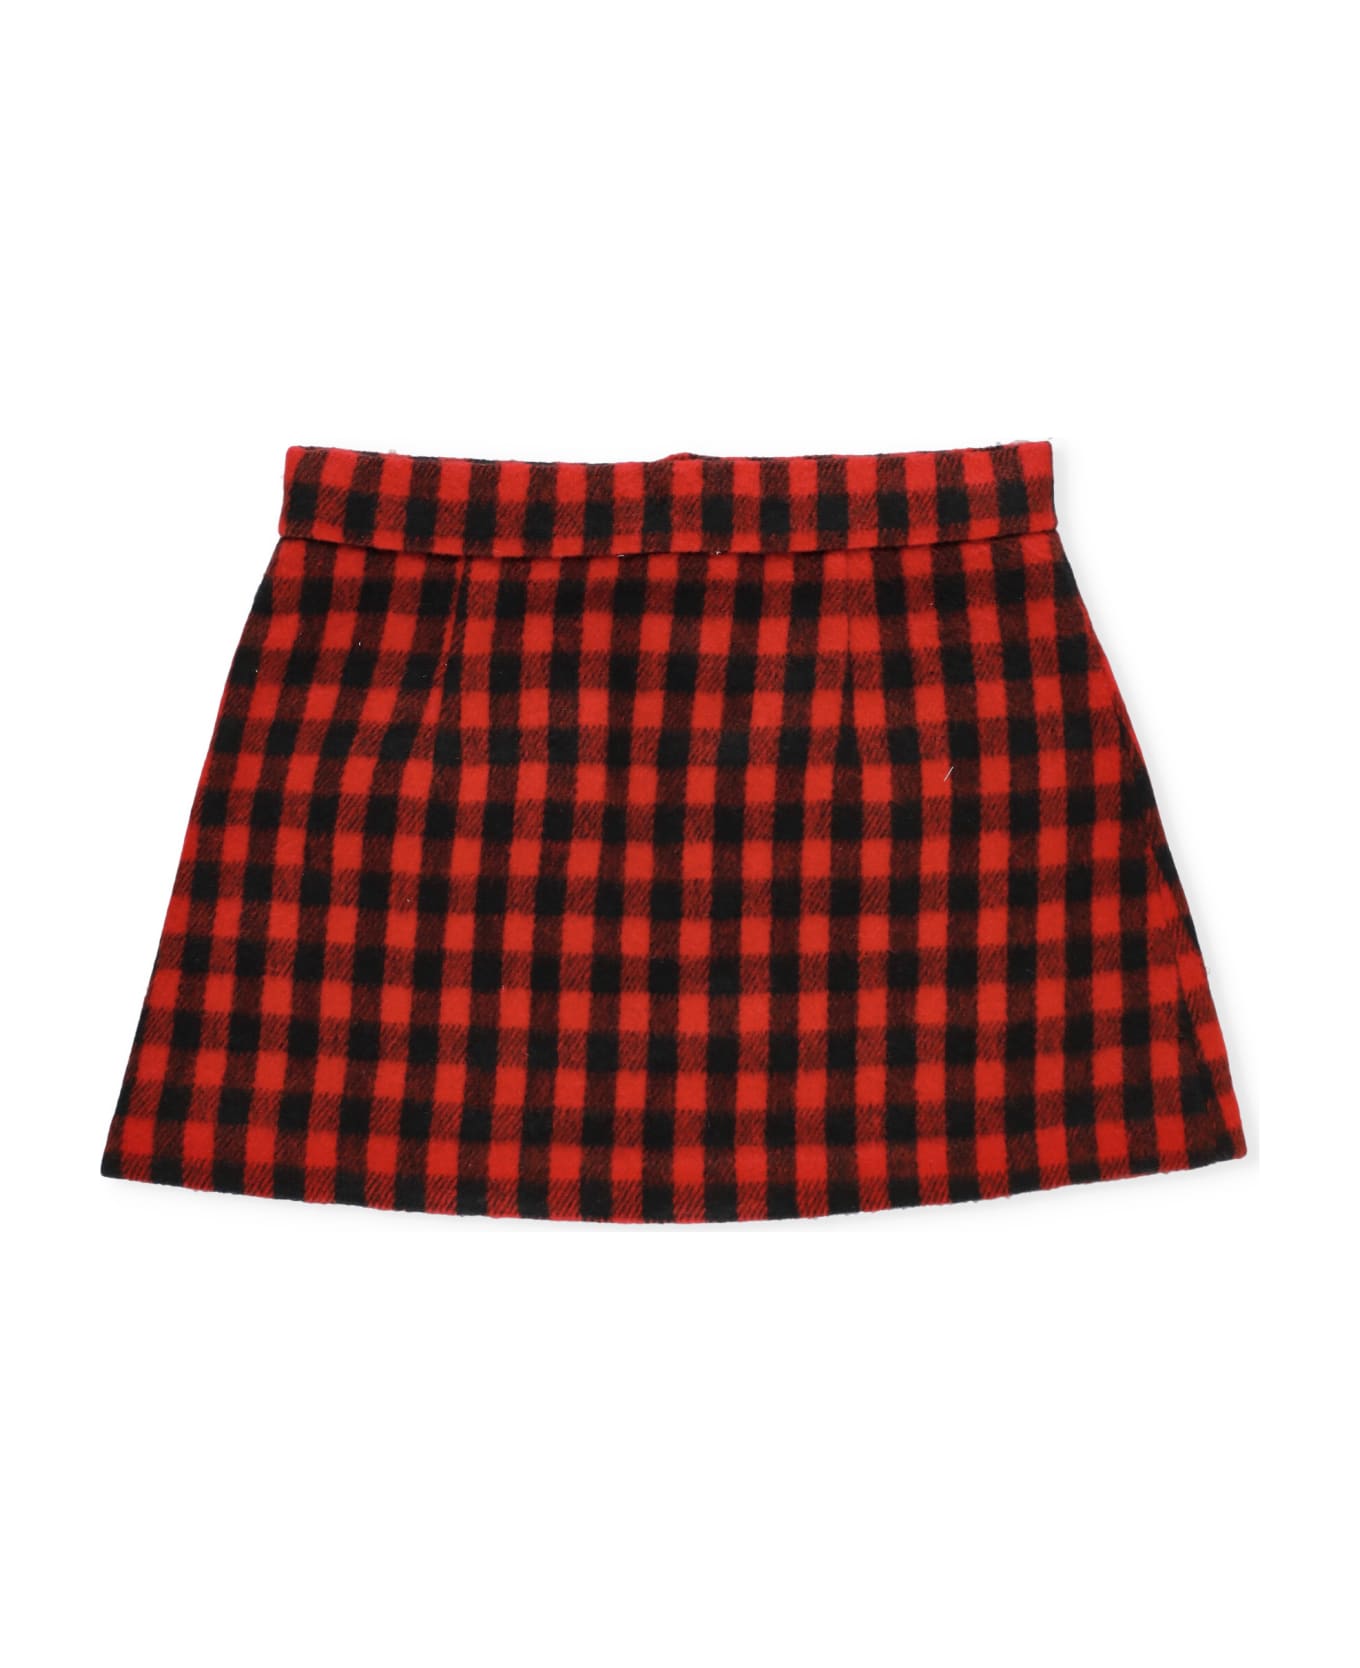 N.21 Wool Blend Skirt - Red